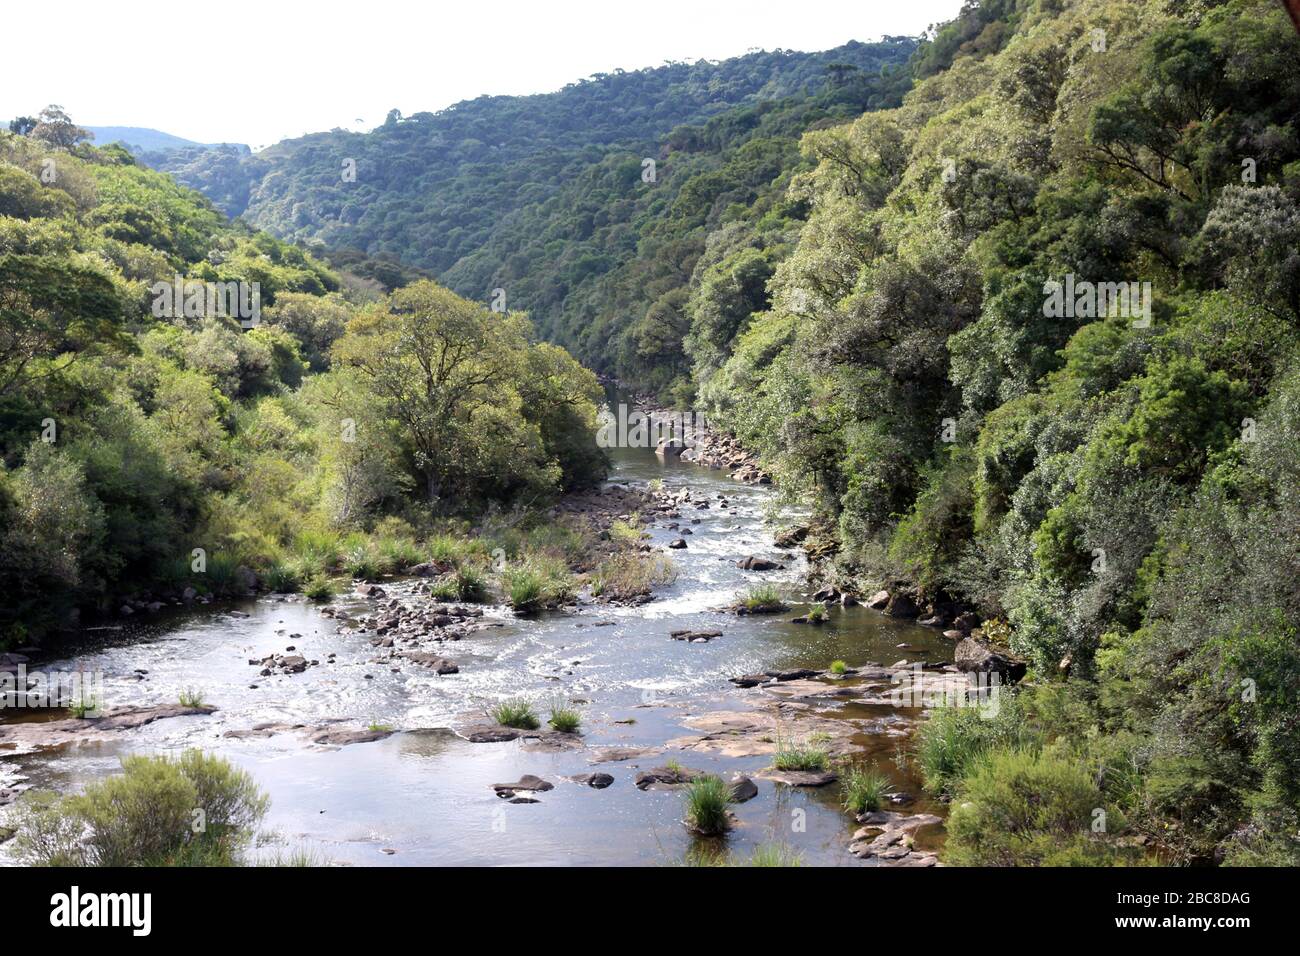 Il sud del Brasile è in un periodo secco. Il fiume scorre lentamente con acqua bassa. Foto Stock